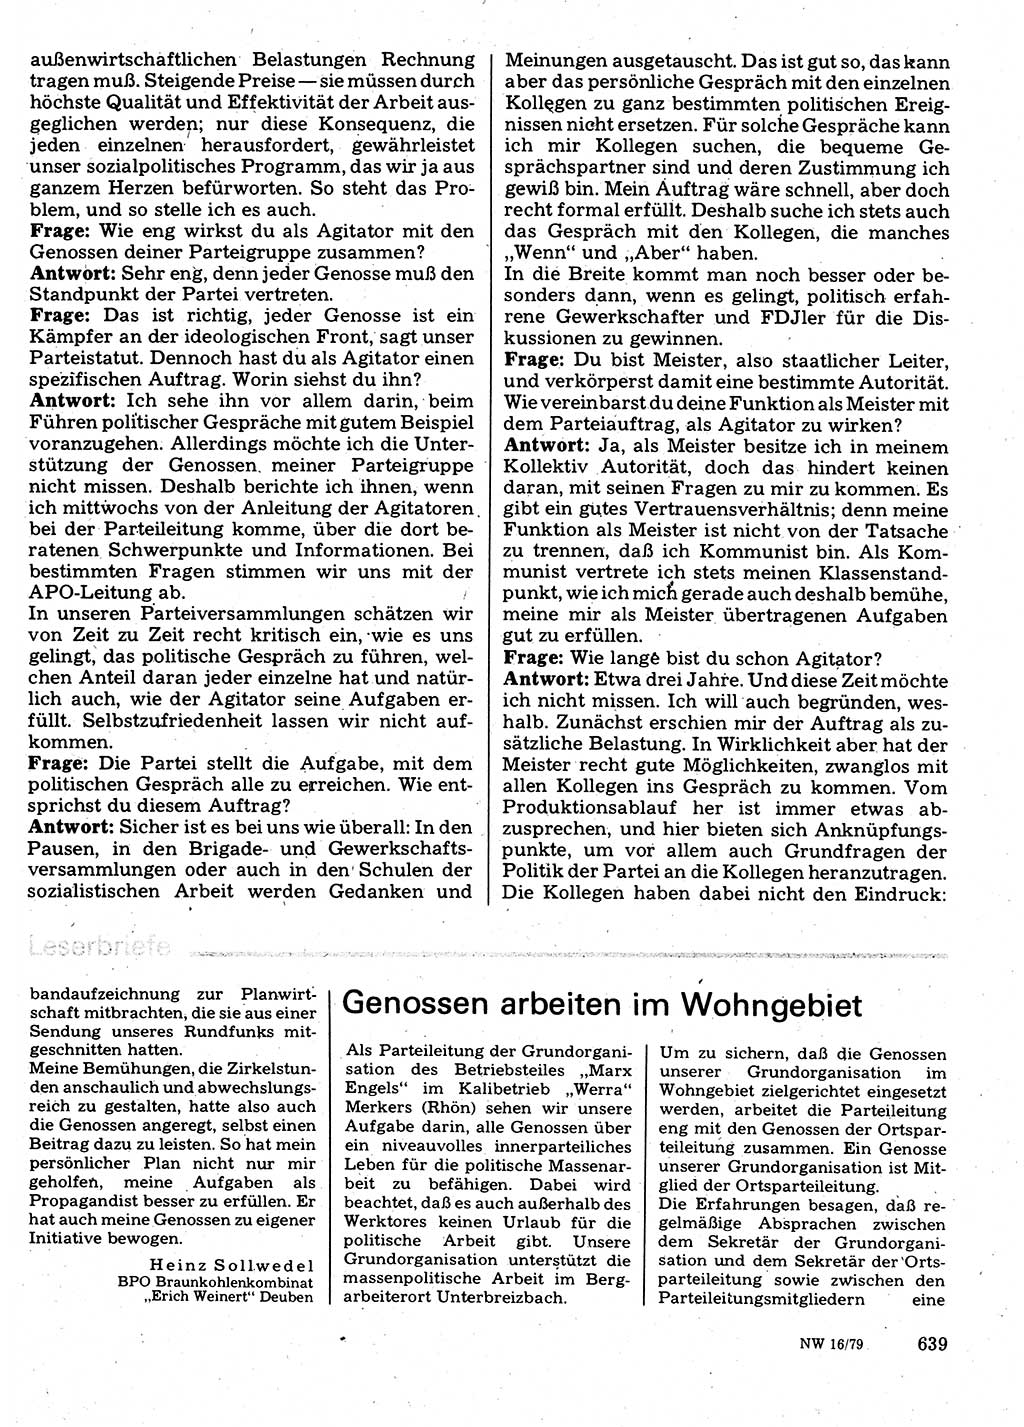 Neuer Weg (NW), Organ des Zentralkomitees (ZK) der SED (Sozialistische Einheitspartei Deutschlands) für Fragen des Parteilebens, 34. Jahrgang [Deutsche Demokratische Republik (DDR)] 1979, Seite 639 (NW ZK SED DDR 1979, S. 639)